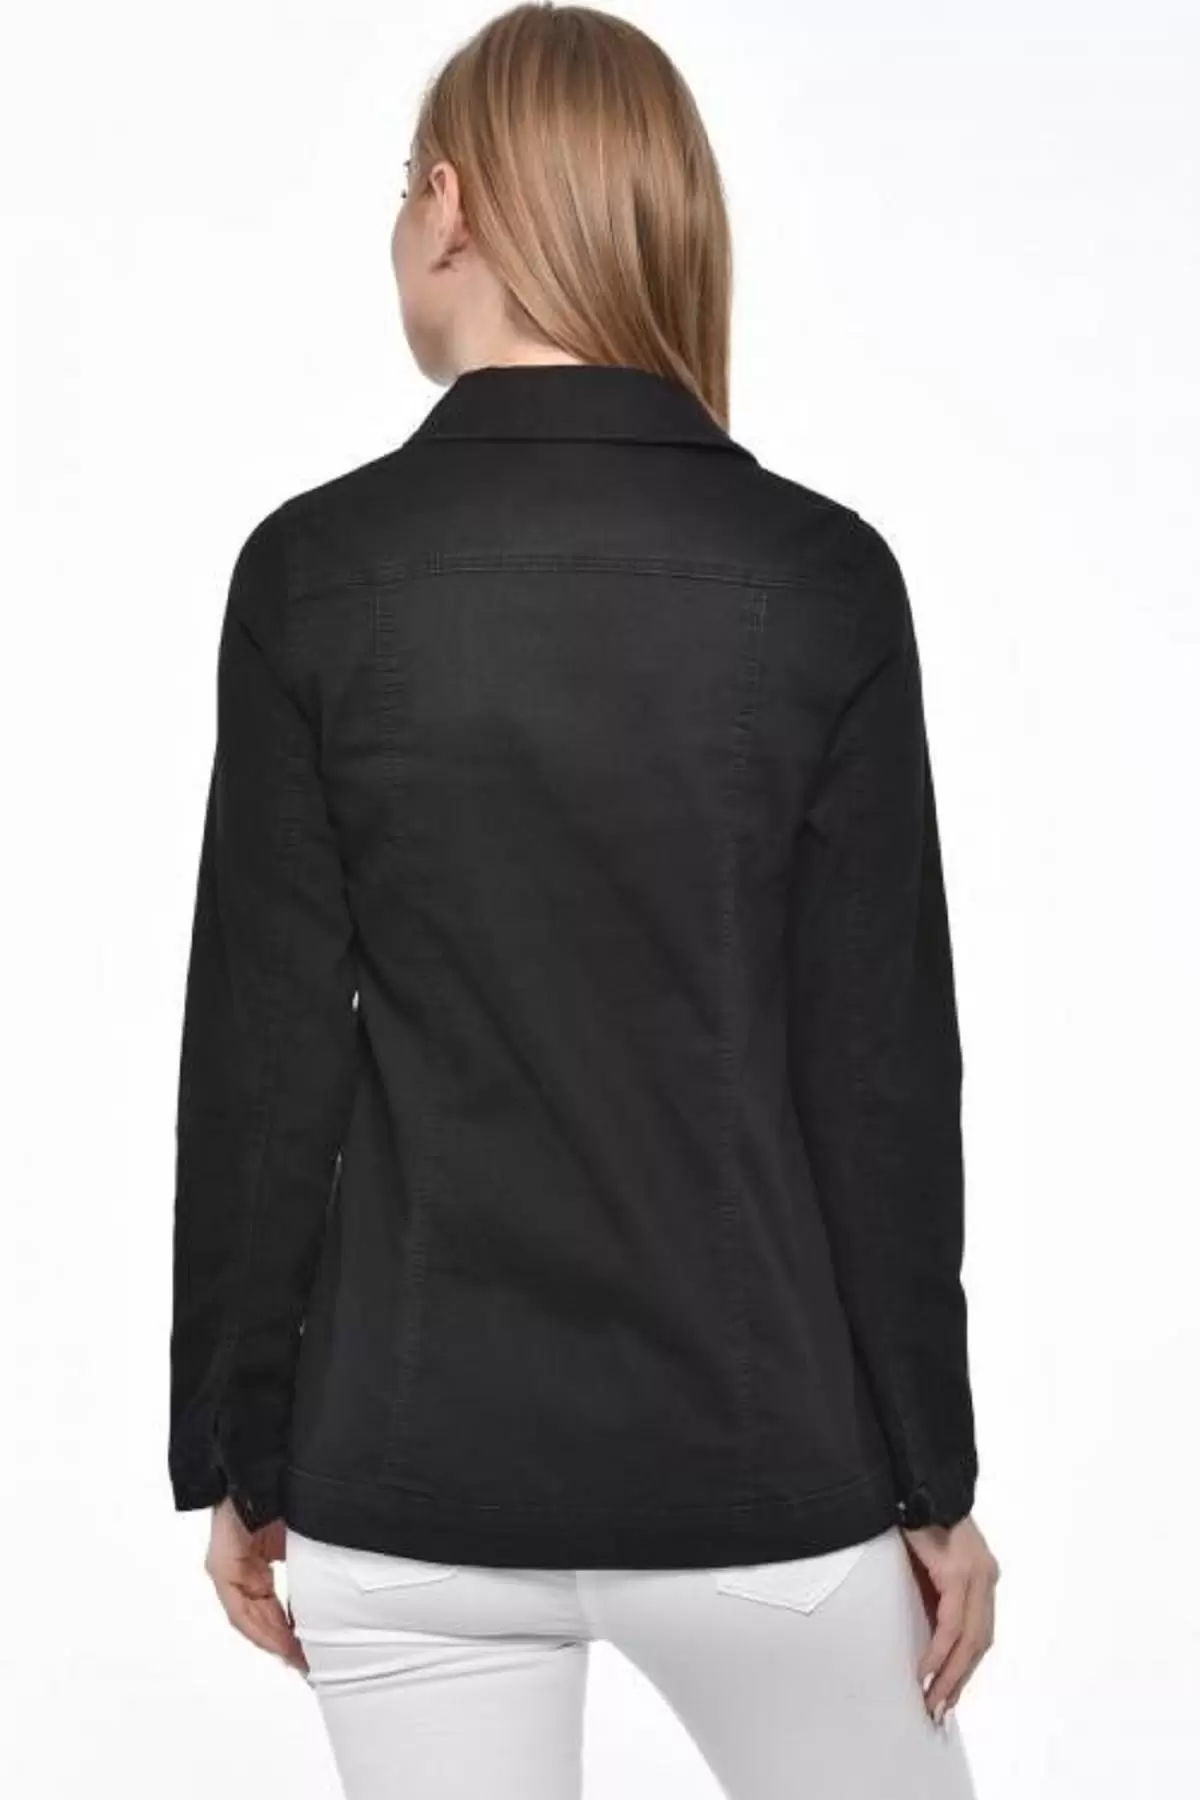 Düğmeli,Cepli ve Likralı Zımparalı Düz Kesim Siyah Kadın Kot Ceket